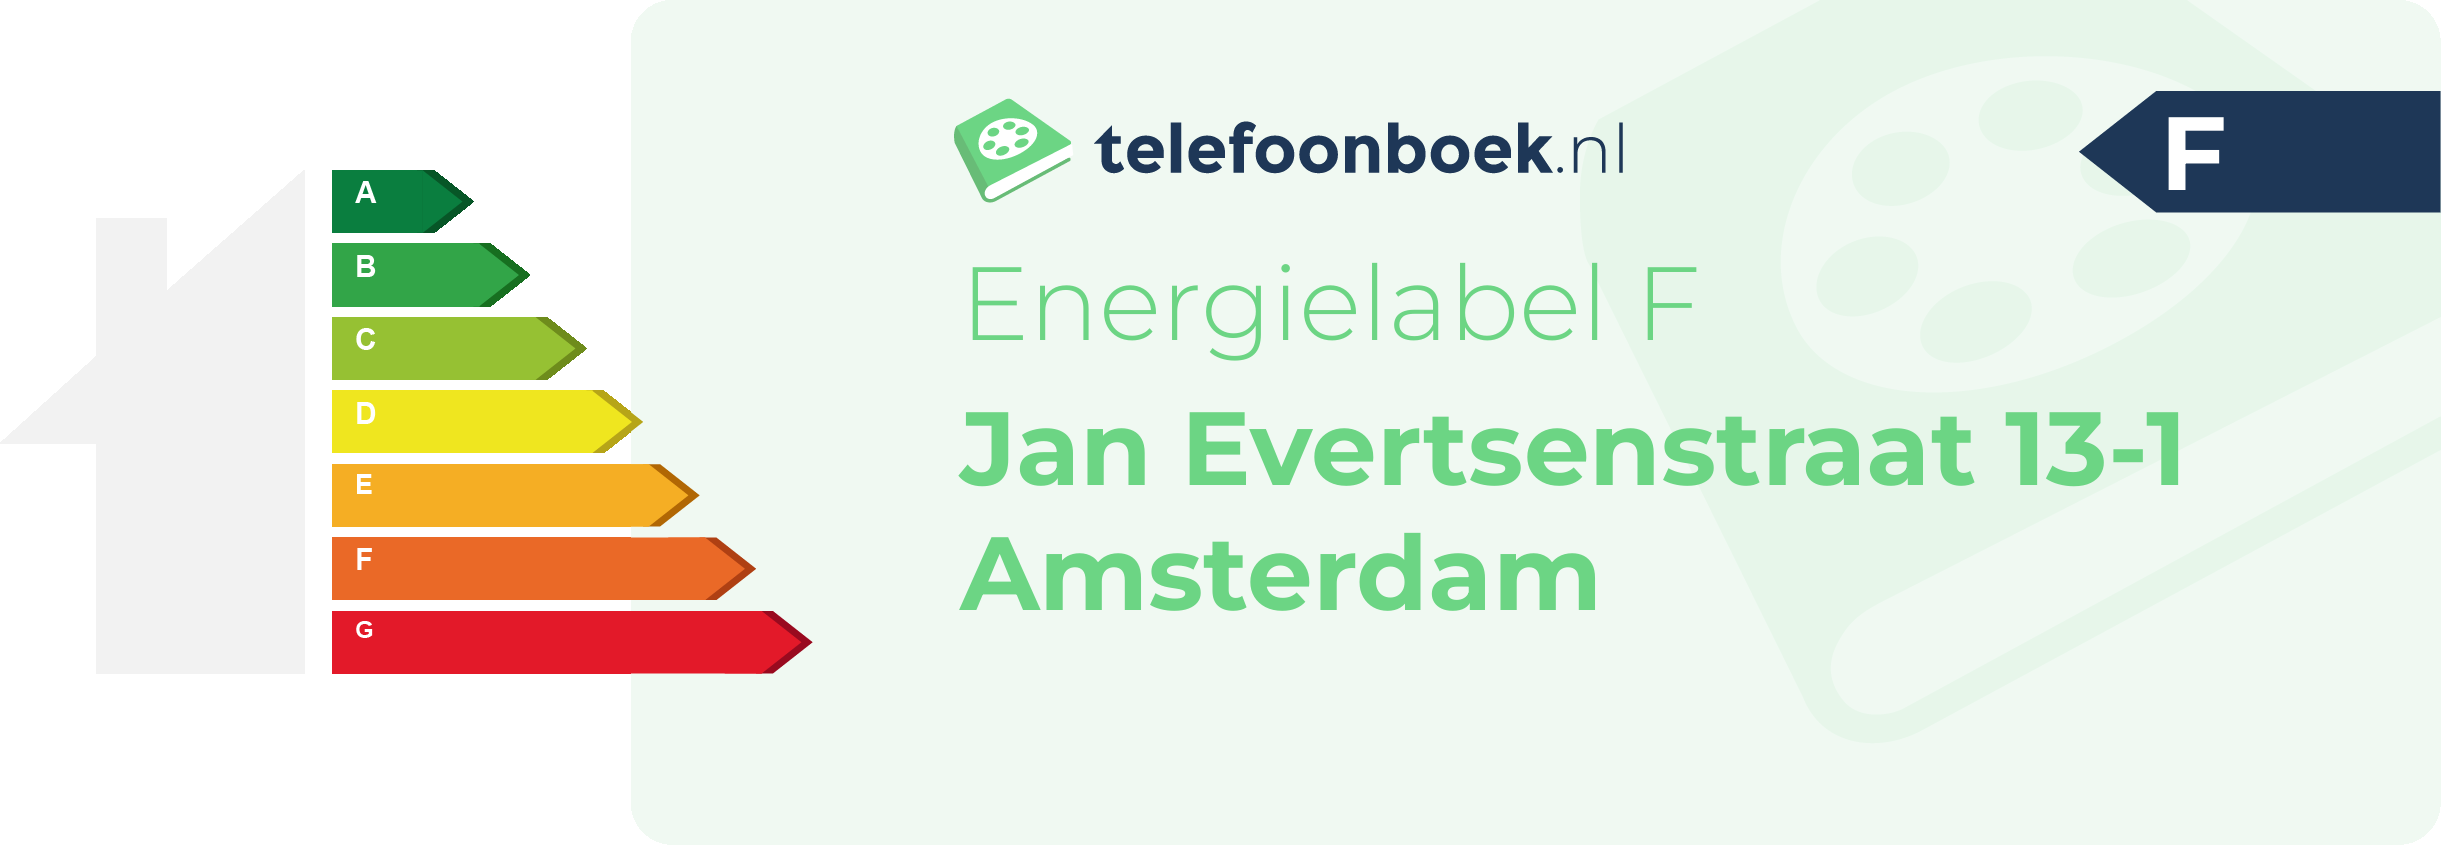 Energielabel Jan Evertsenstraat 13-1 Amsterdam